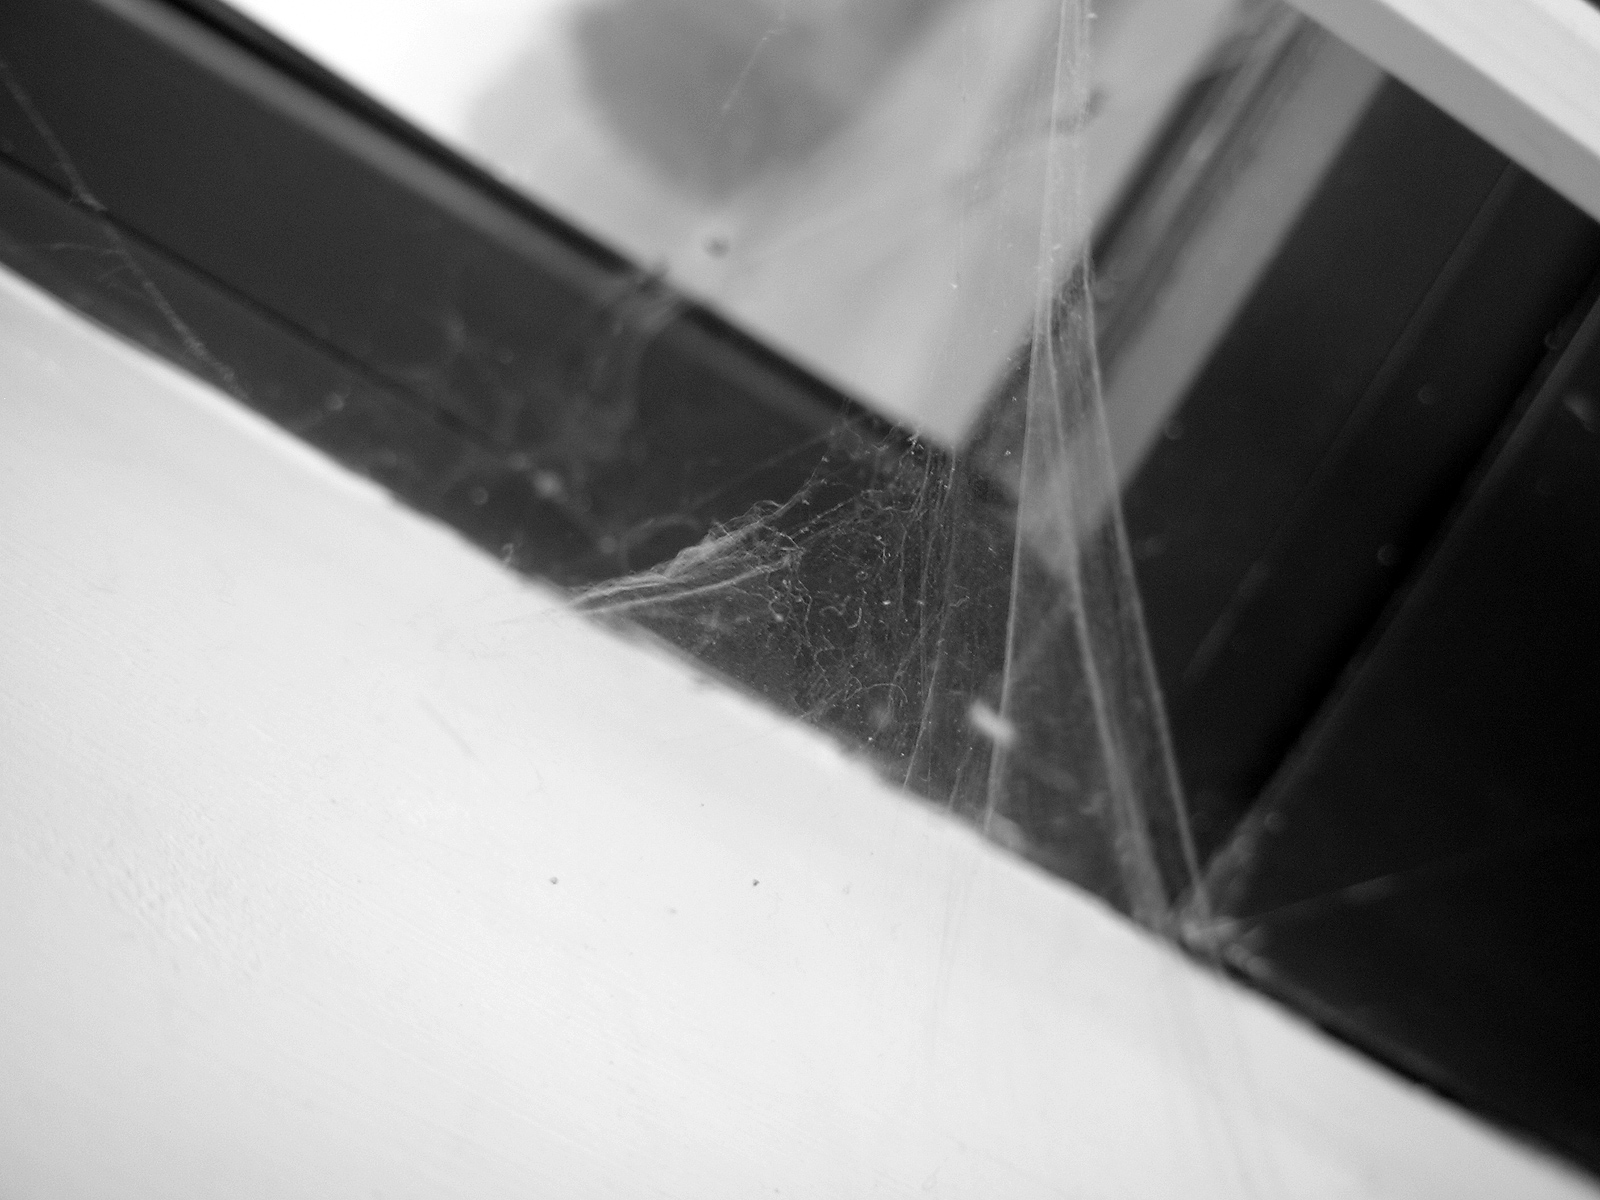 Spiderweb photo